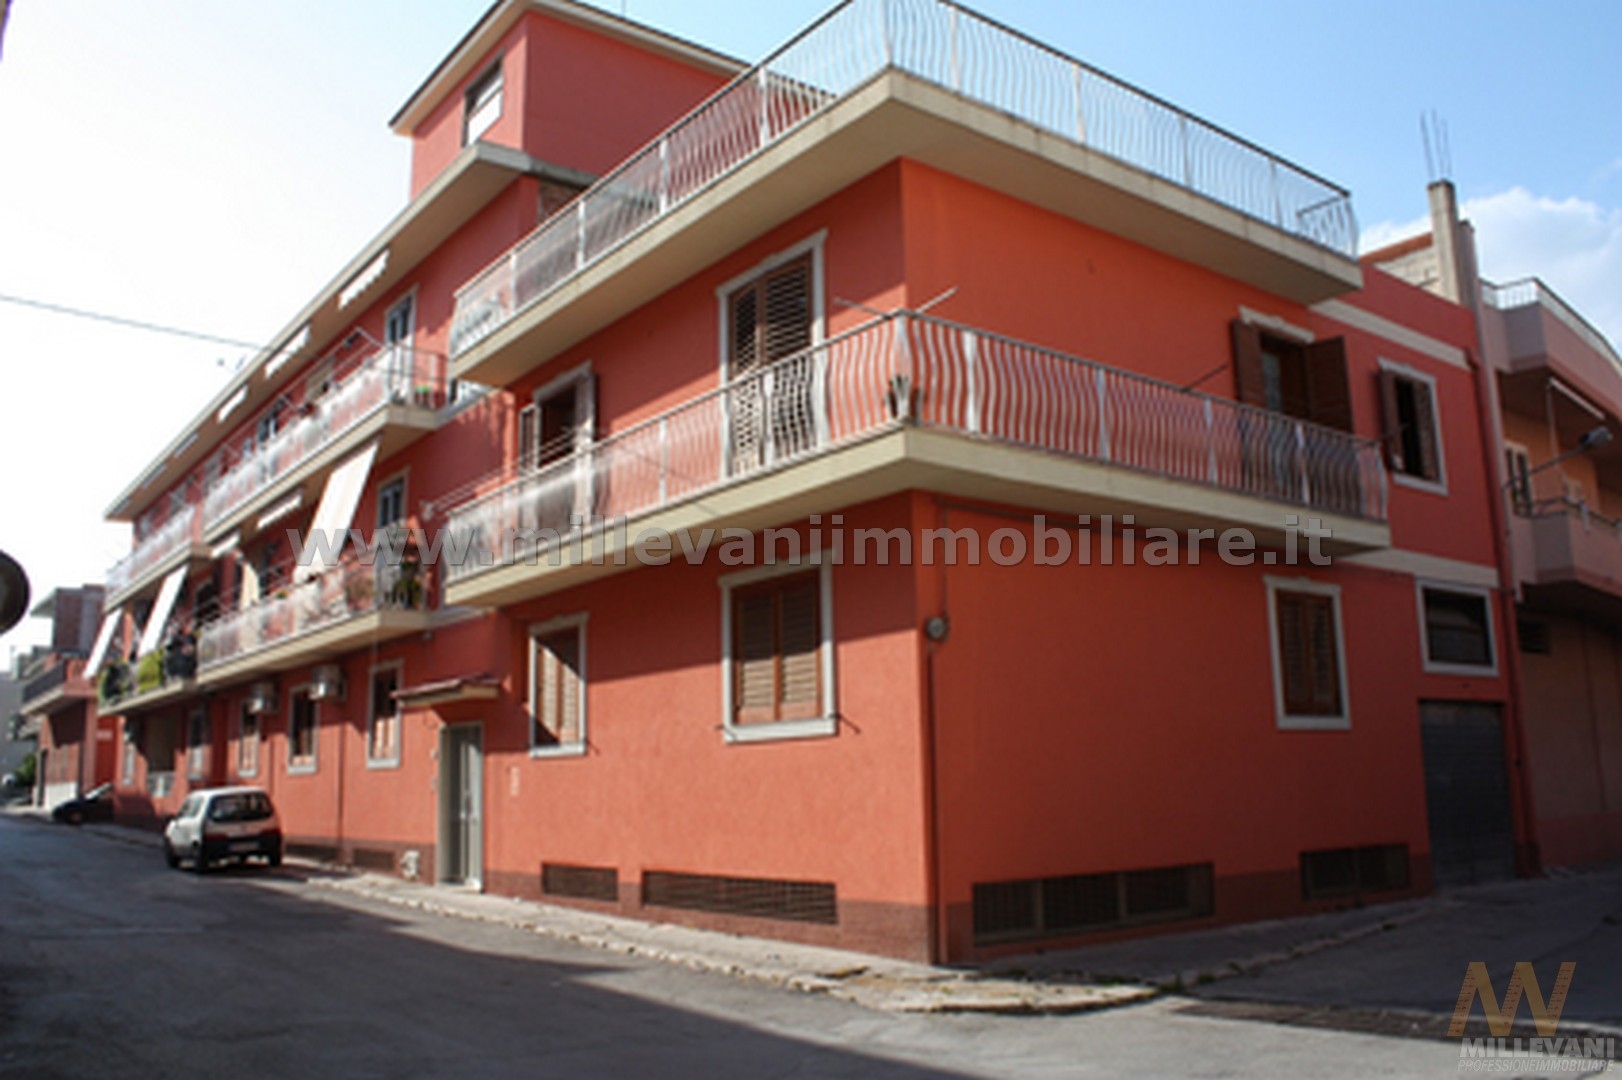 Appartamento in vendita a Pozzallo, 3 locali, zona Località: SanPaolo, prezzo € 98.000 | CambioCasa.it